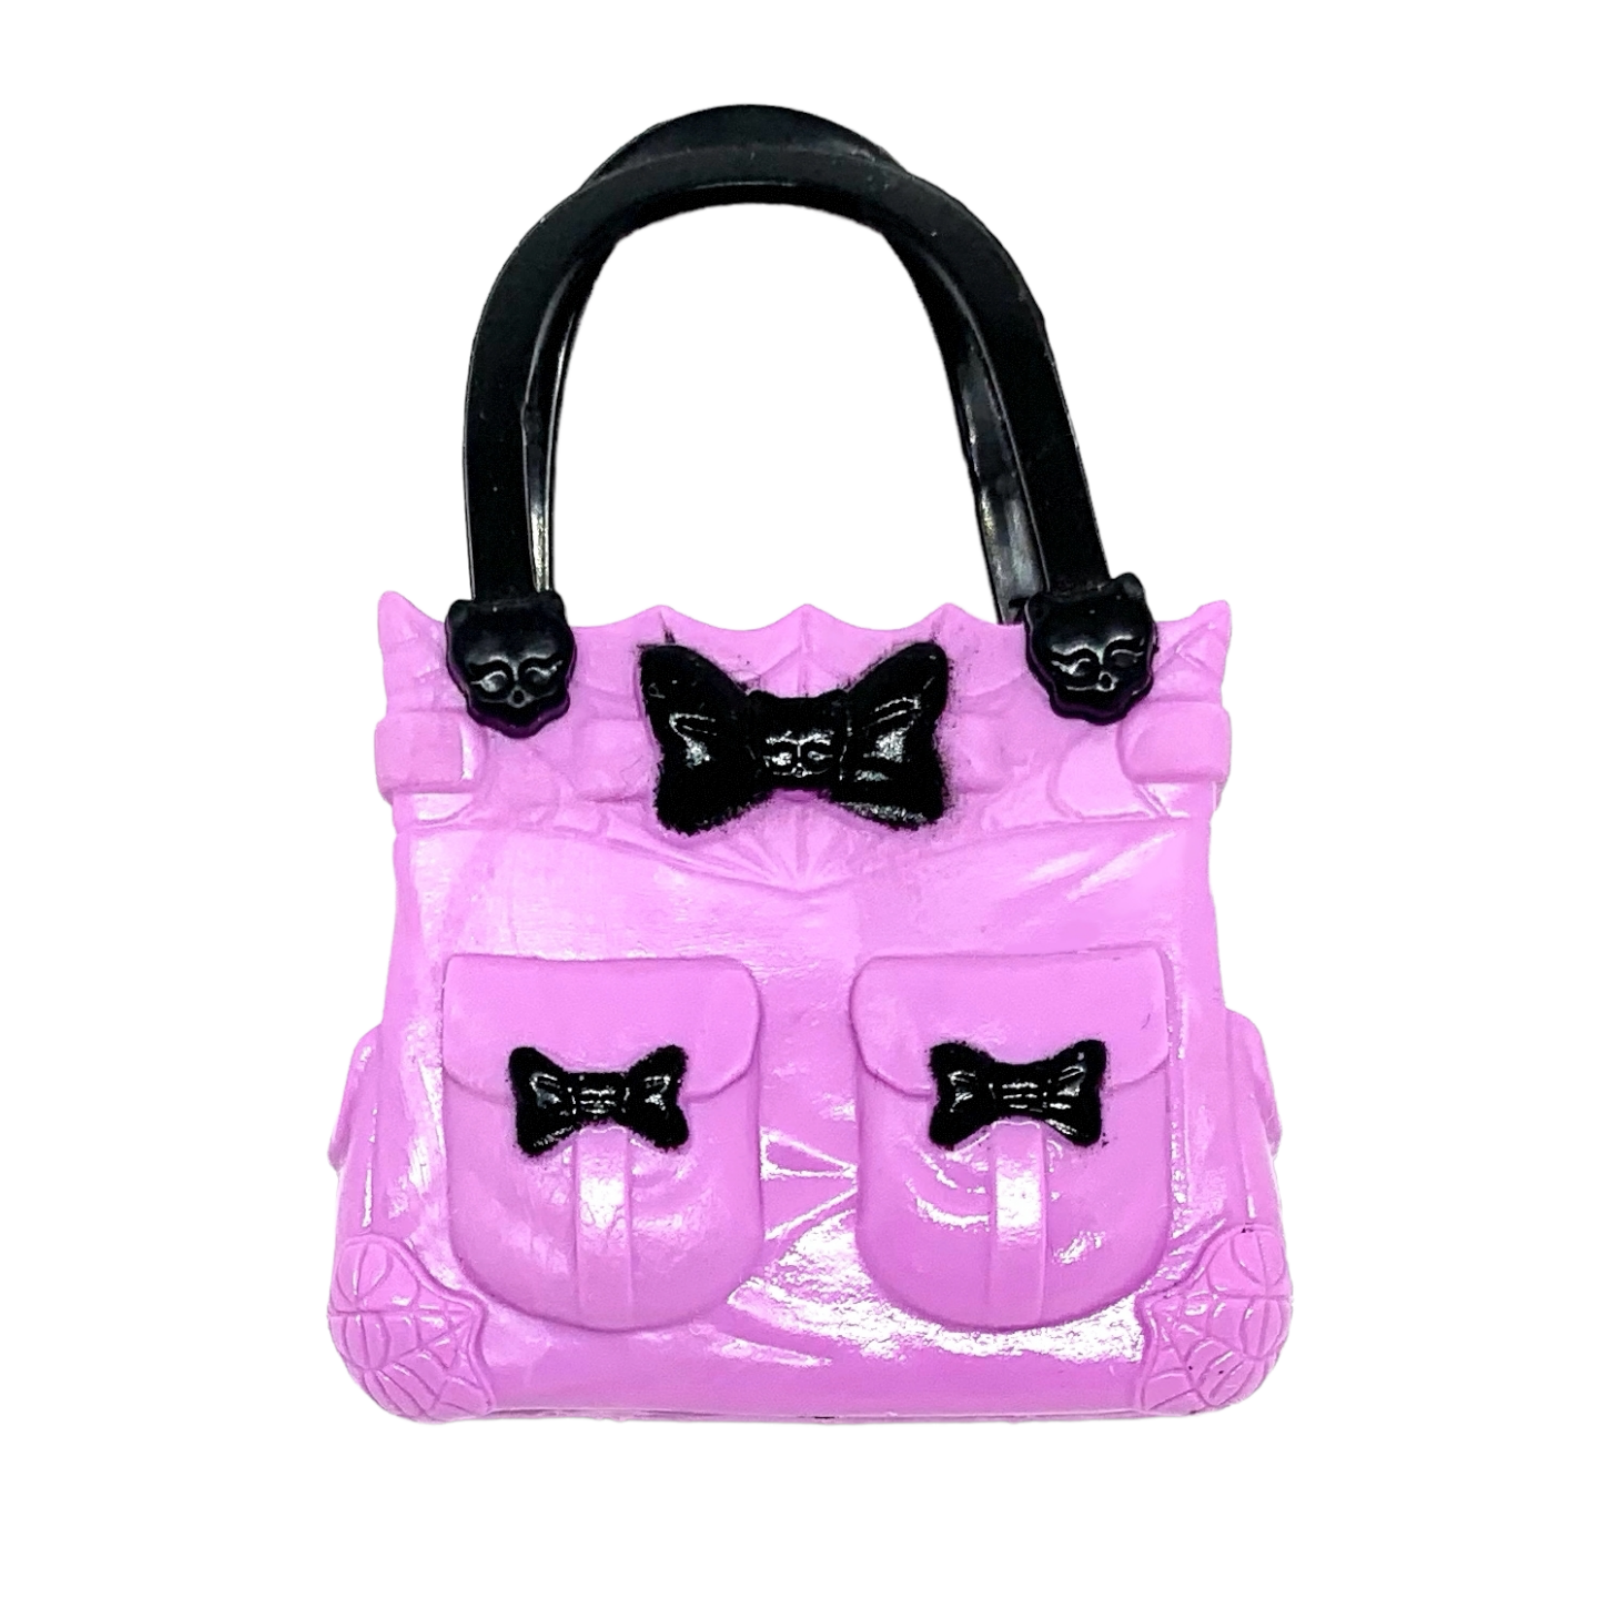 Barbie doll Fashionistas purse handbags pink lot of 4 | eBay